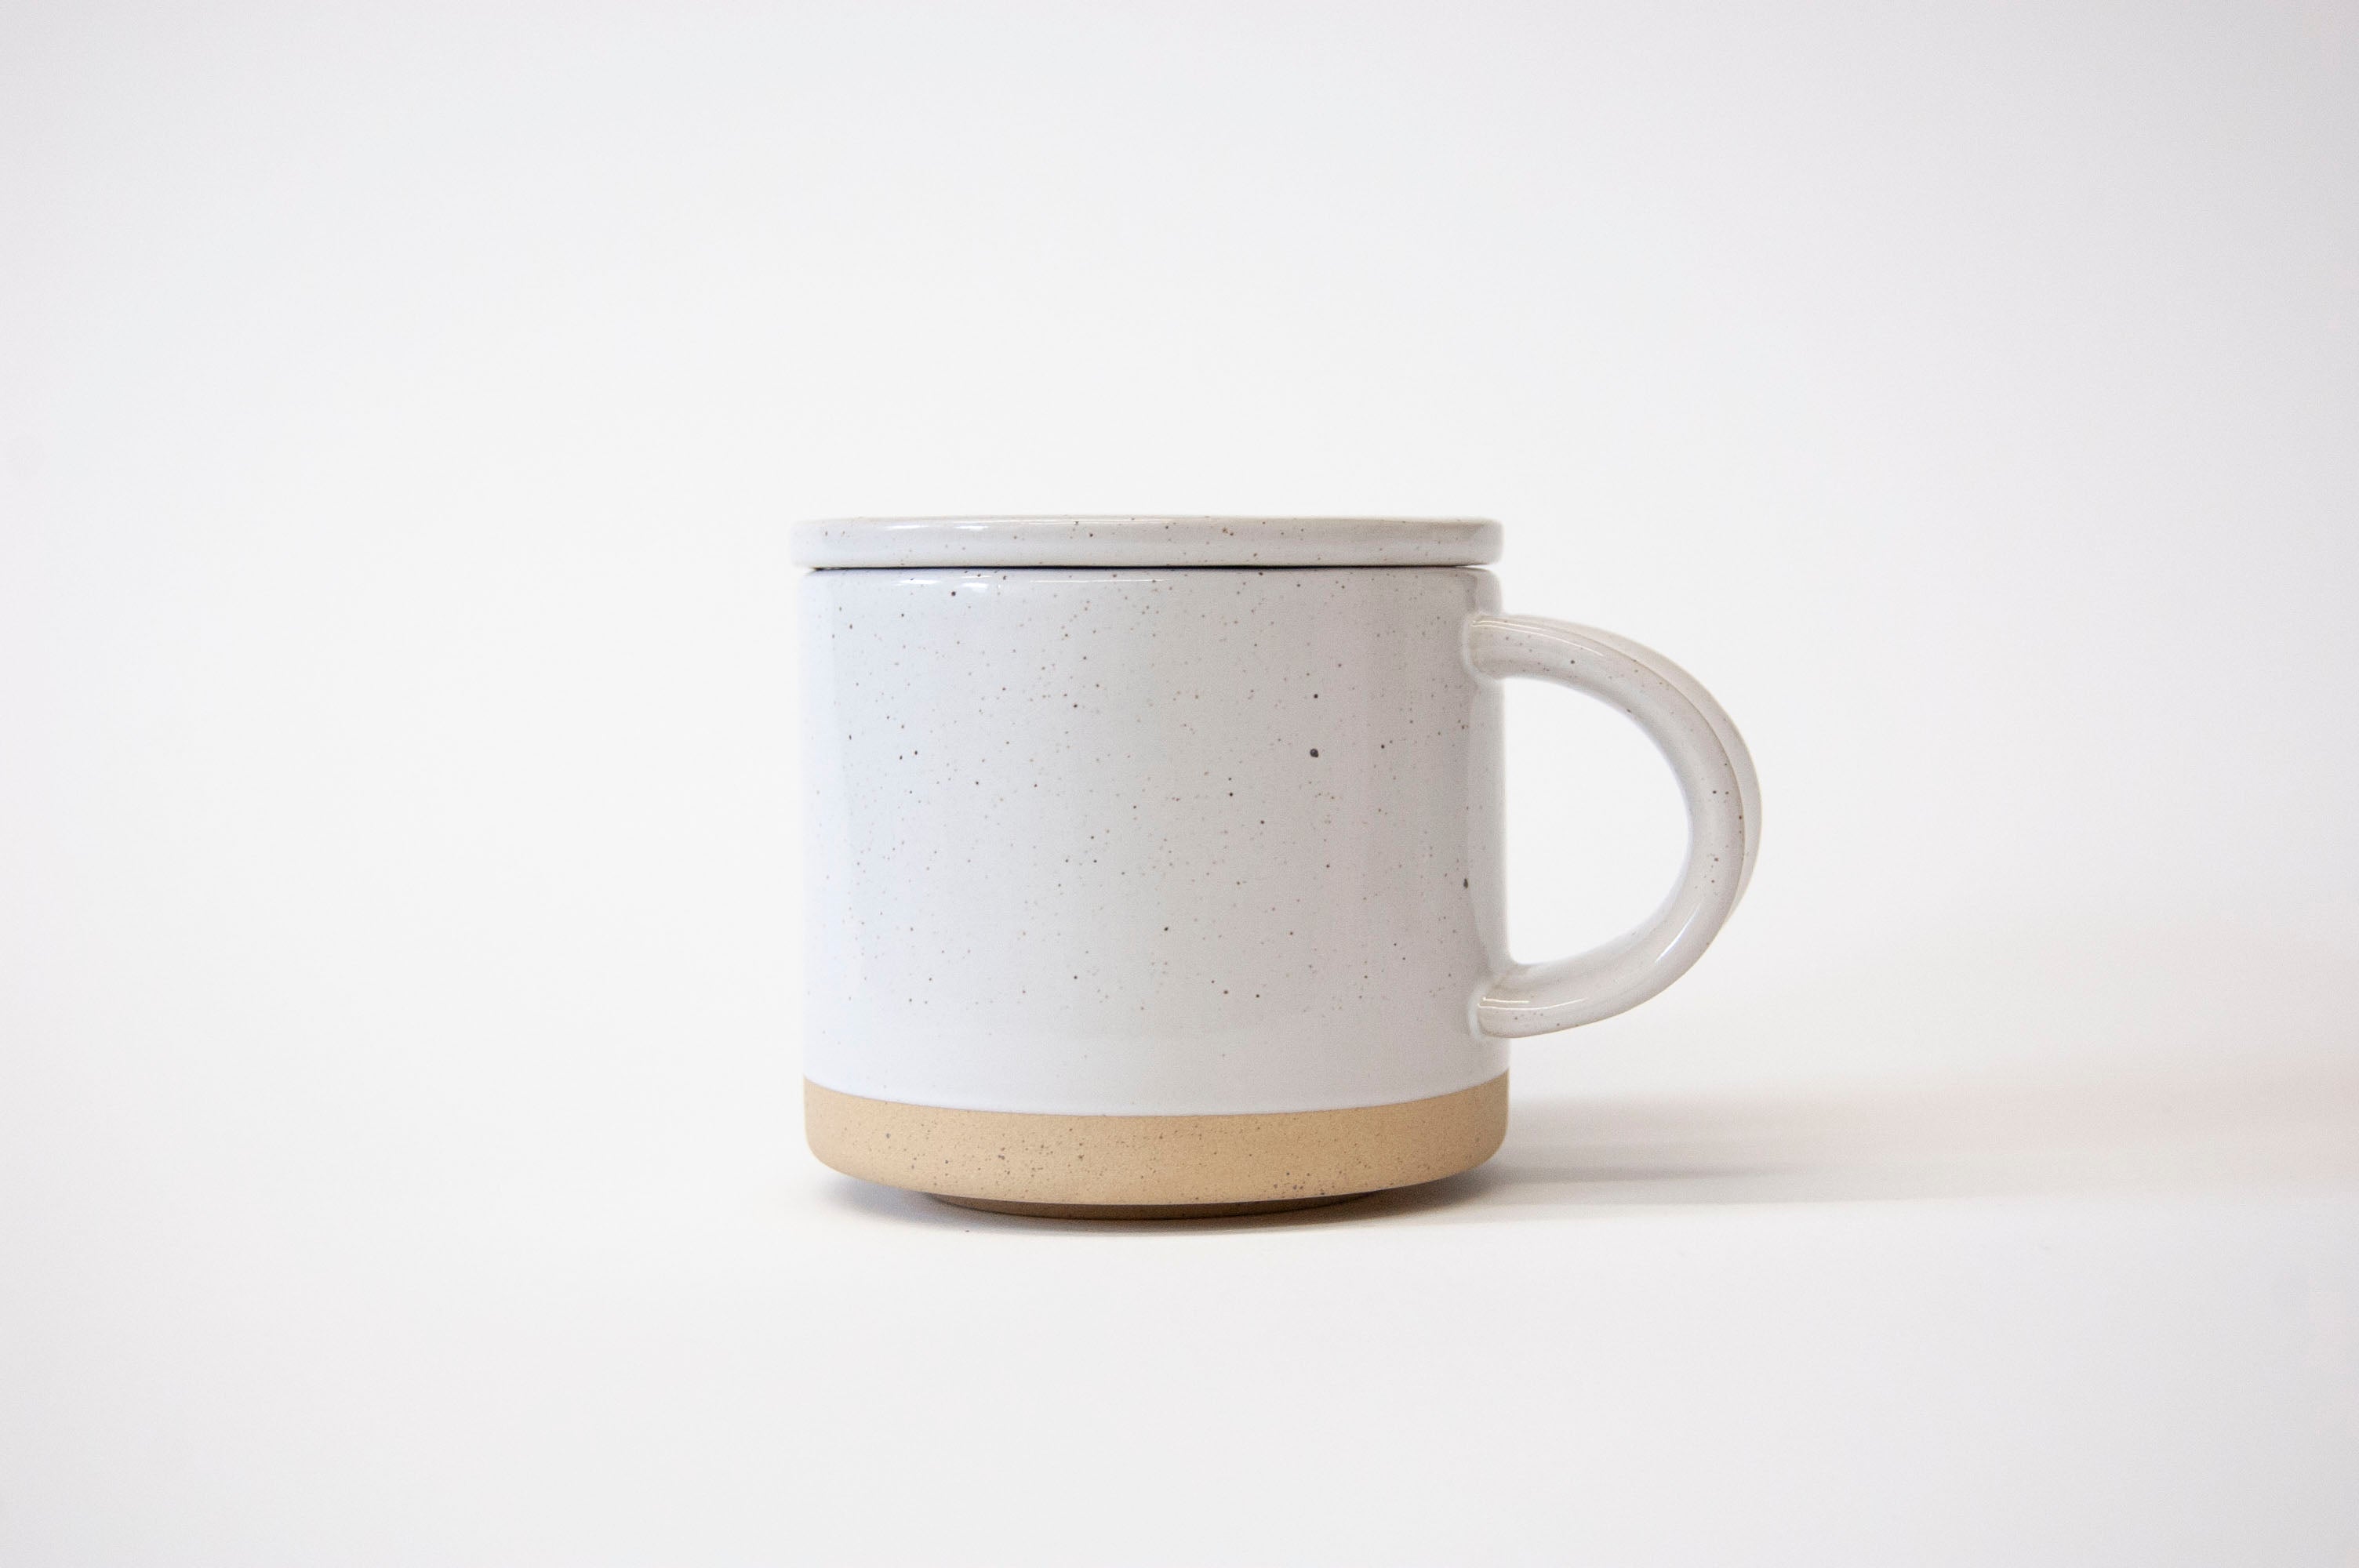 Speckle Mug with Lid - Set of 2